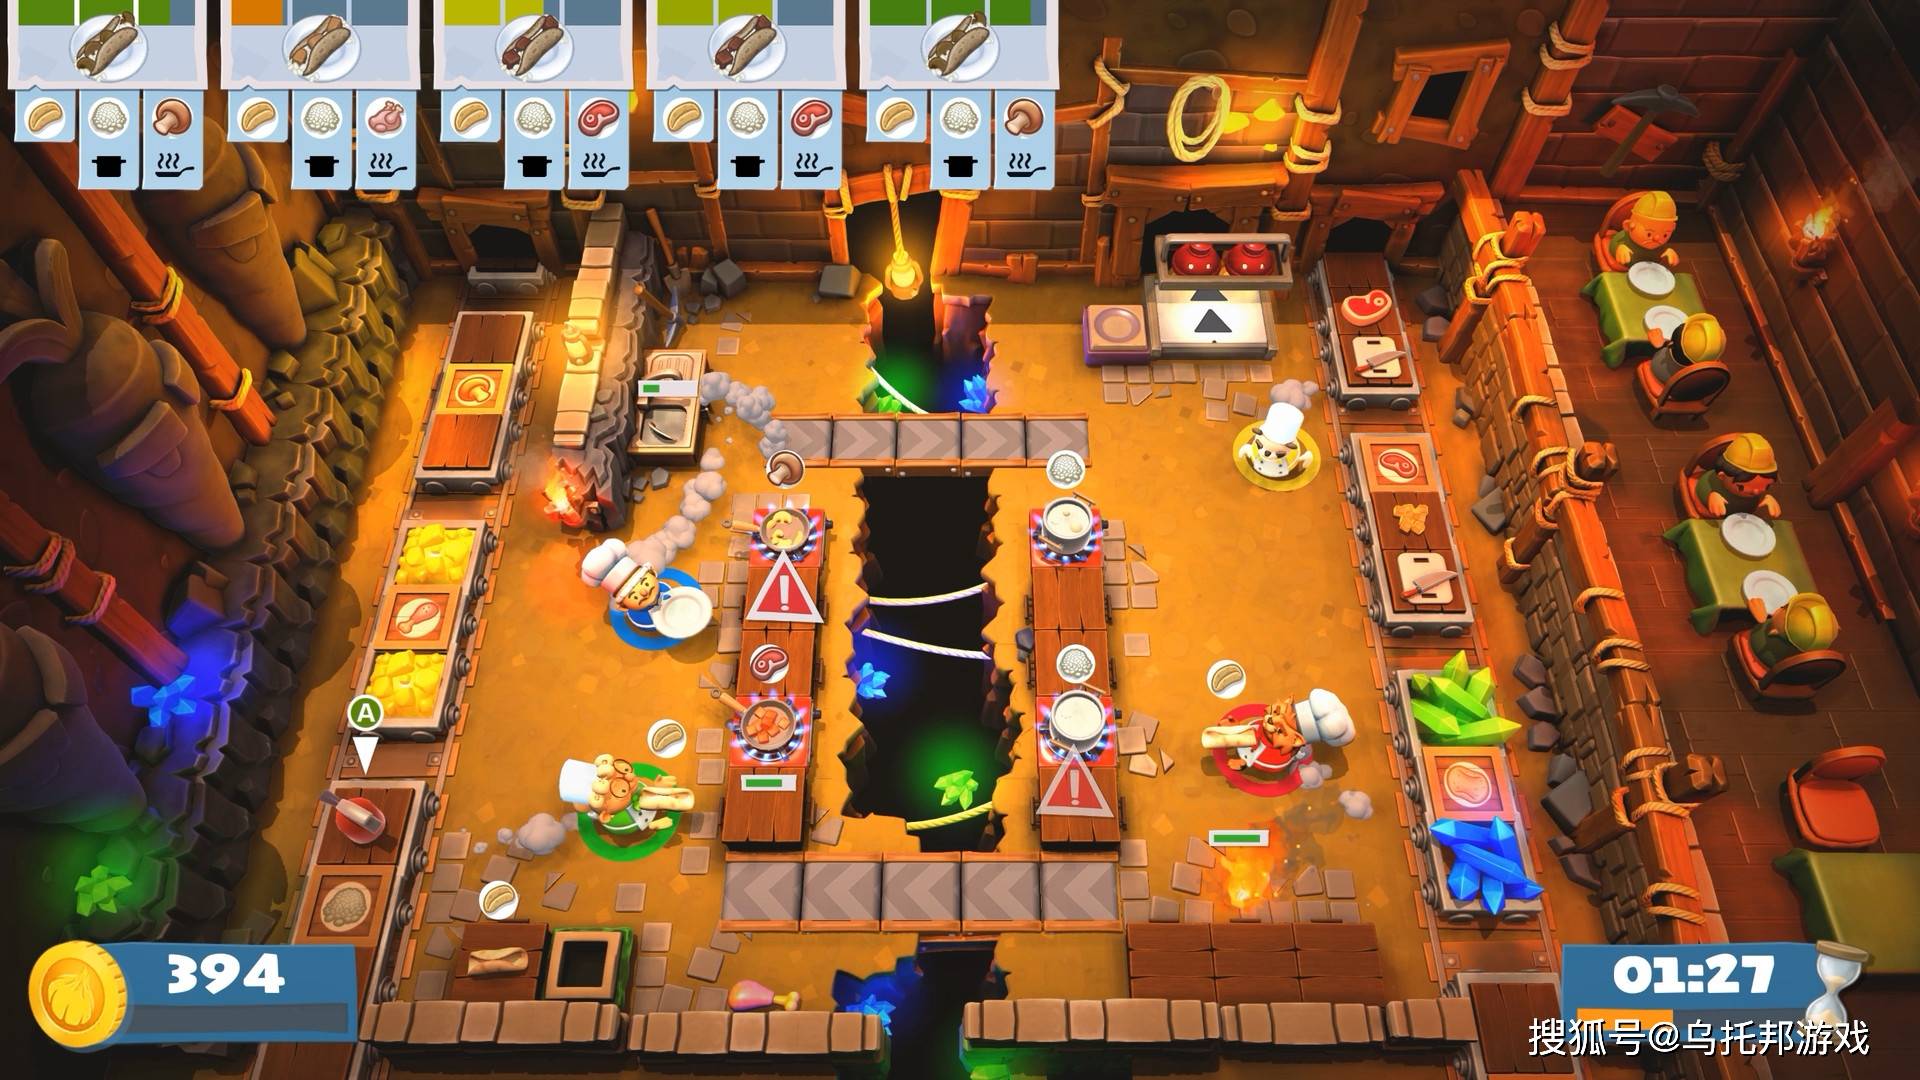 即使分手也要继续做菜,switch联机游戏推荐:《分手厨房2》